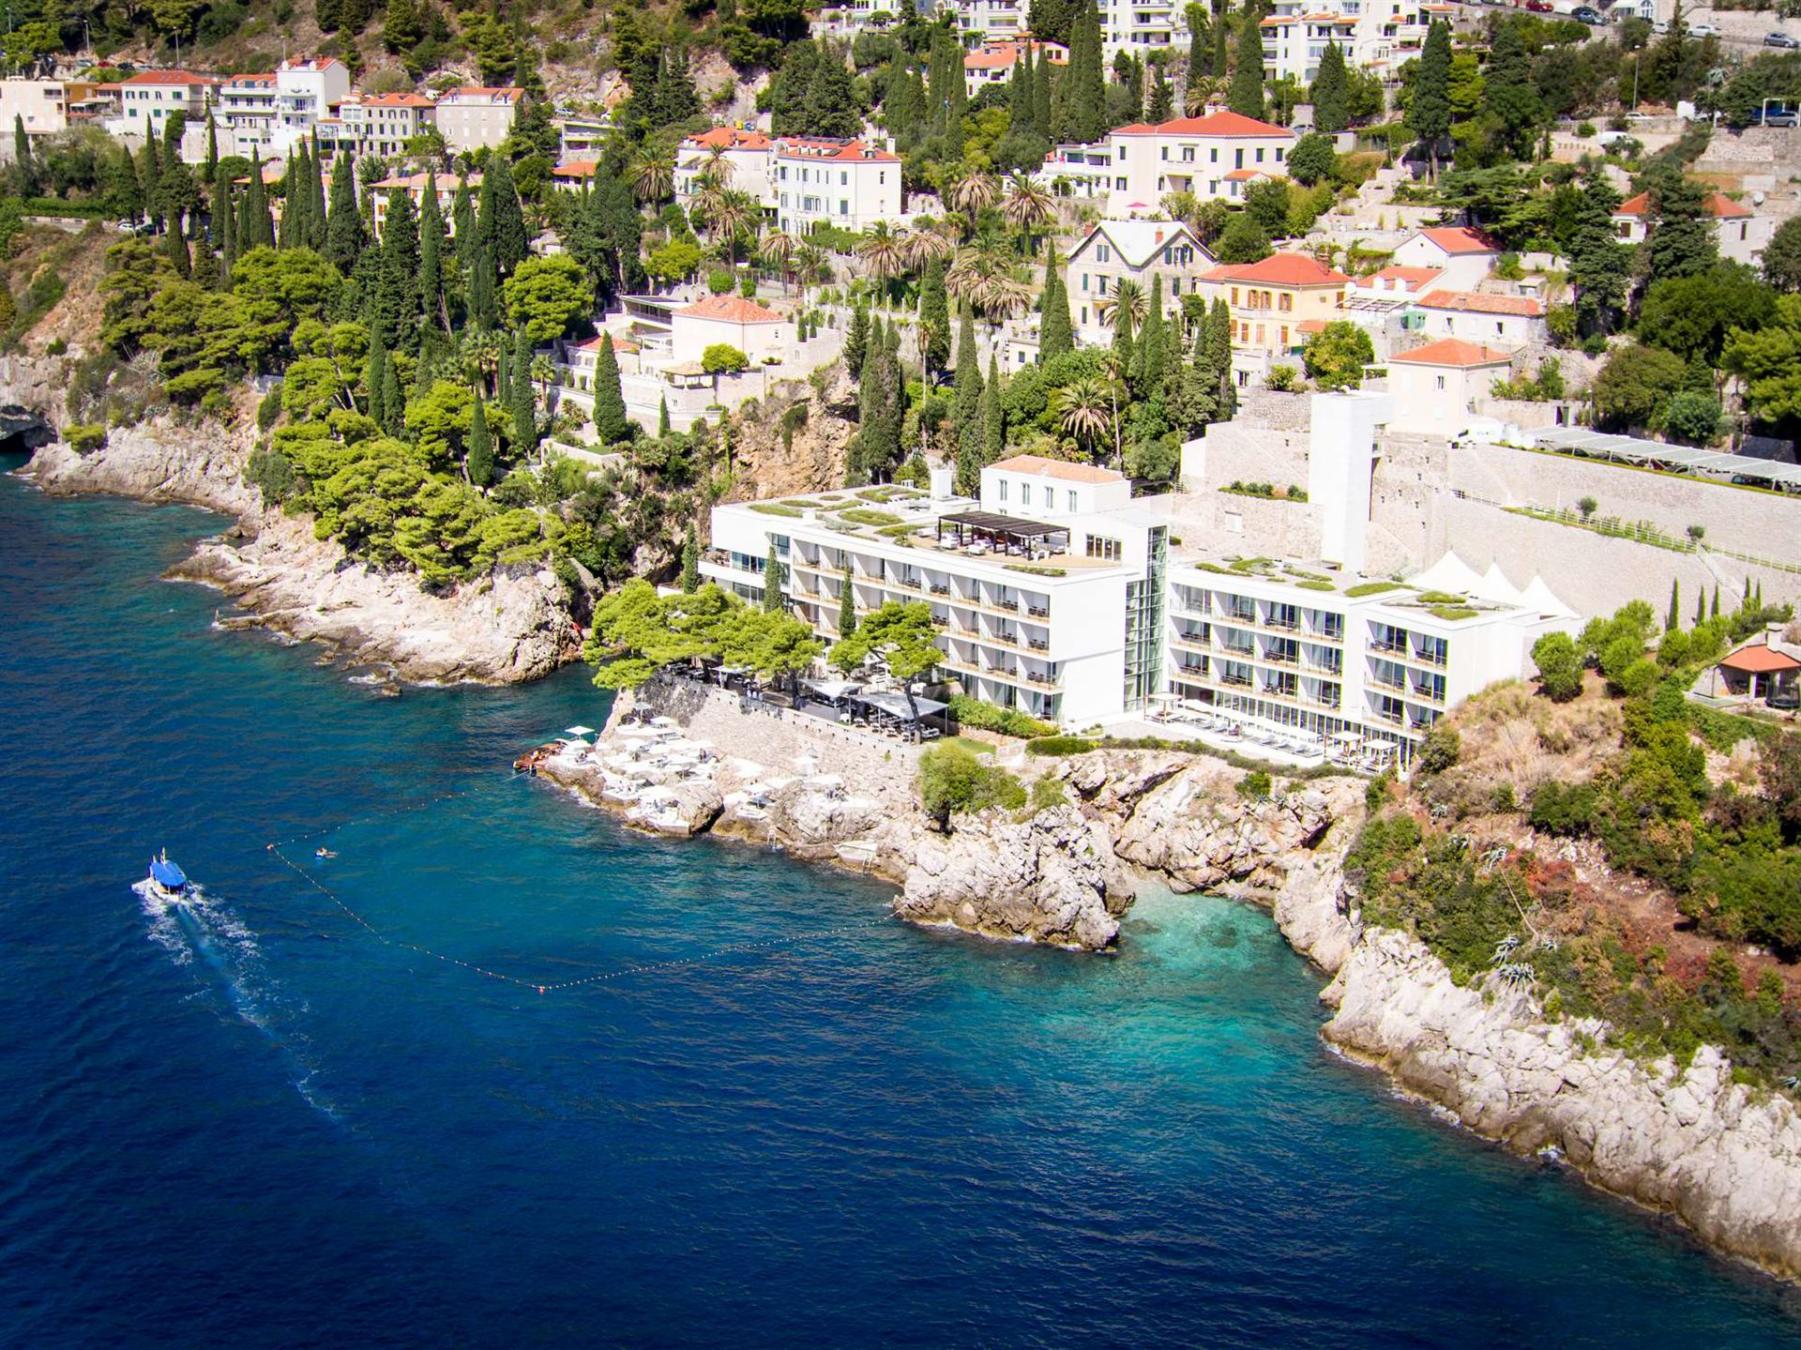 Villa Dubrovnik luxe hotel deals